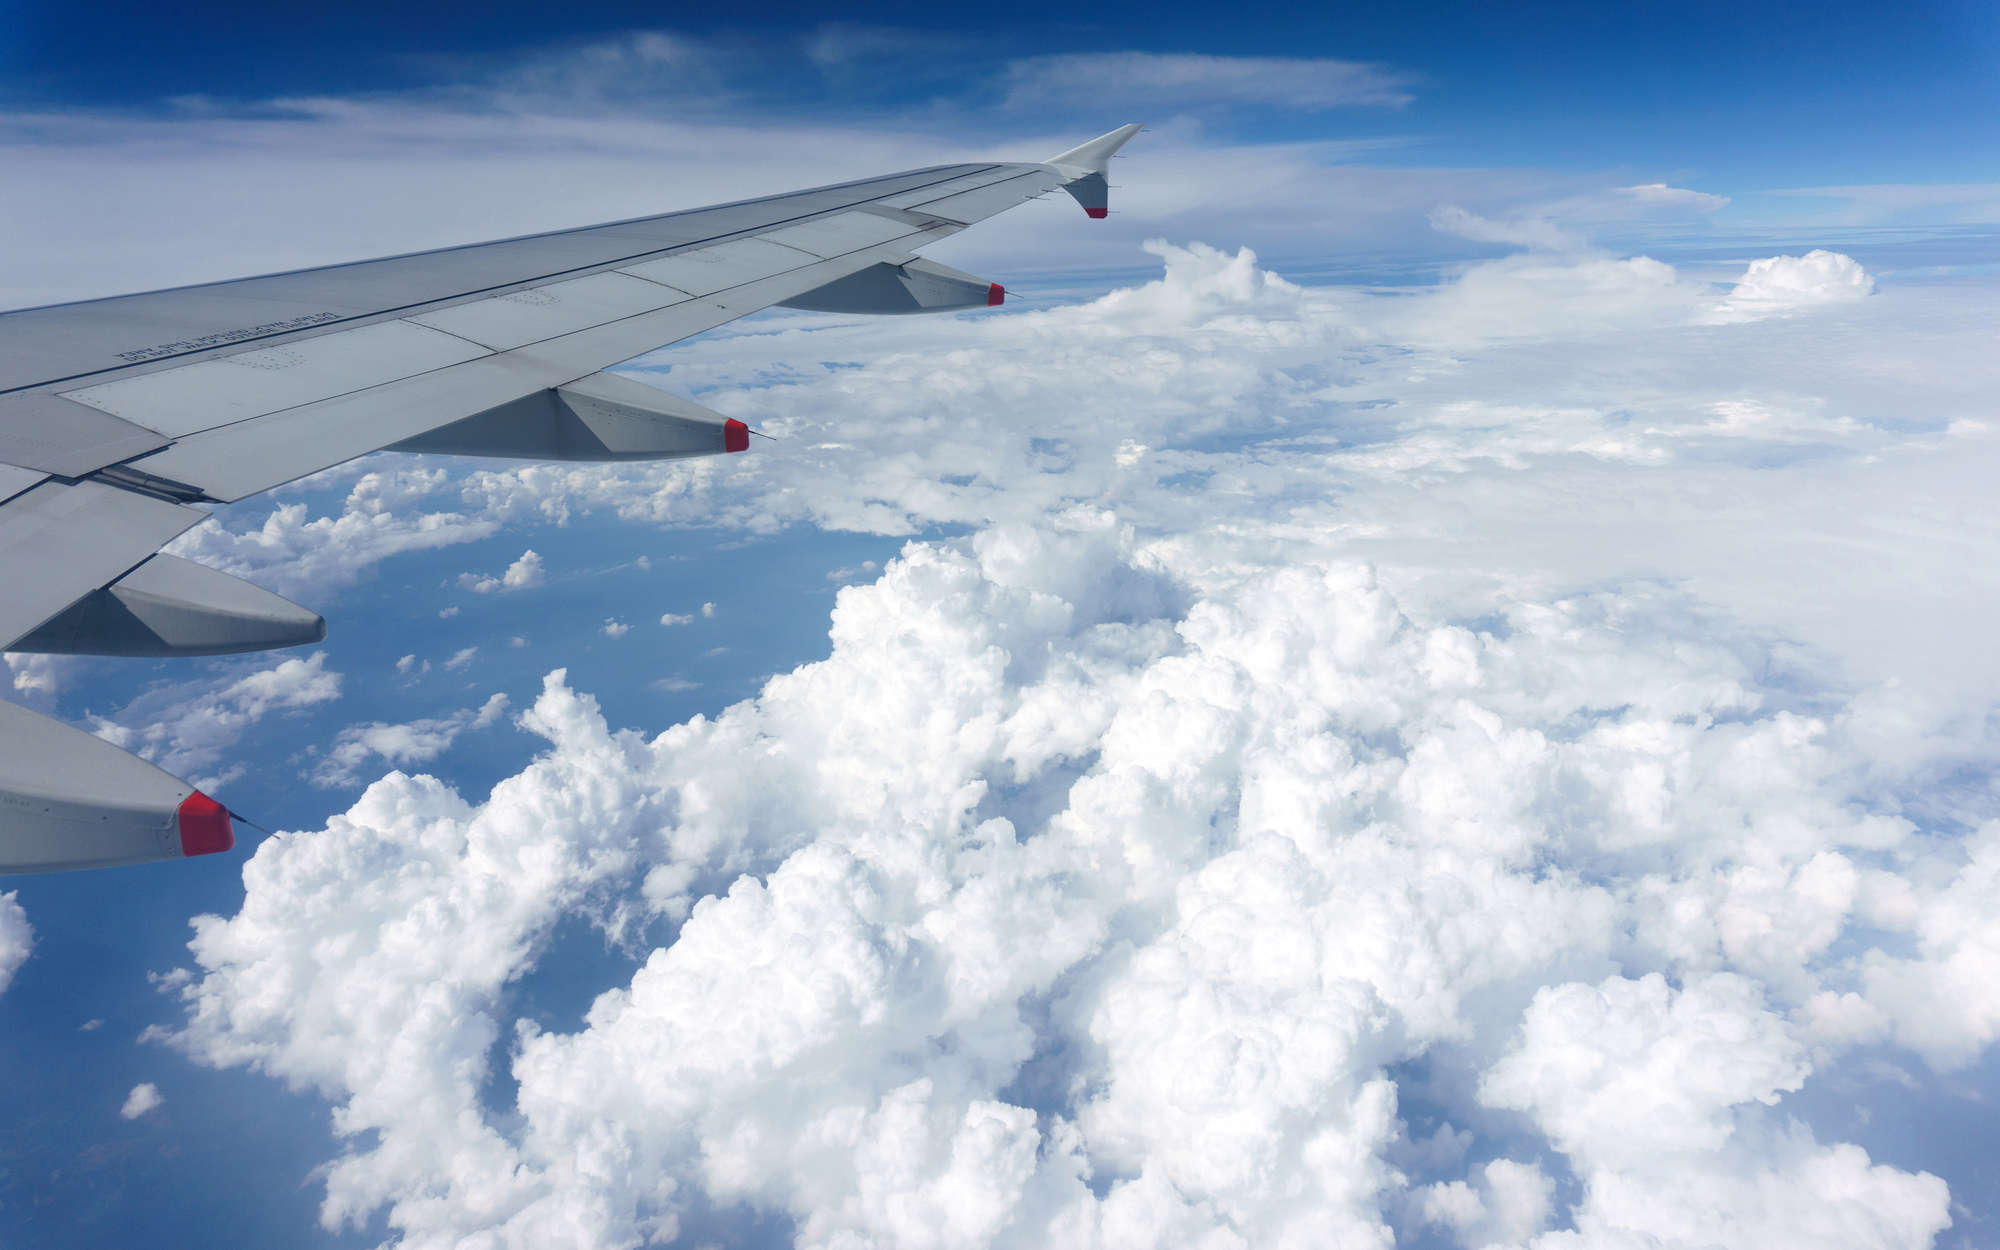             Digital behang Vliegtuig boven de wolken - Premium glad vlies
        